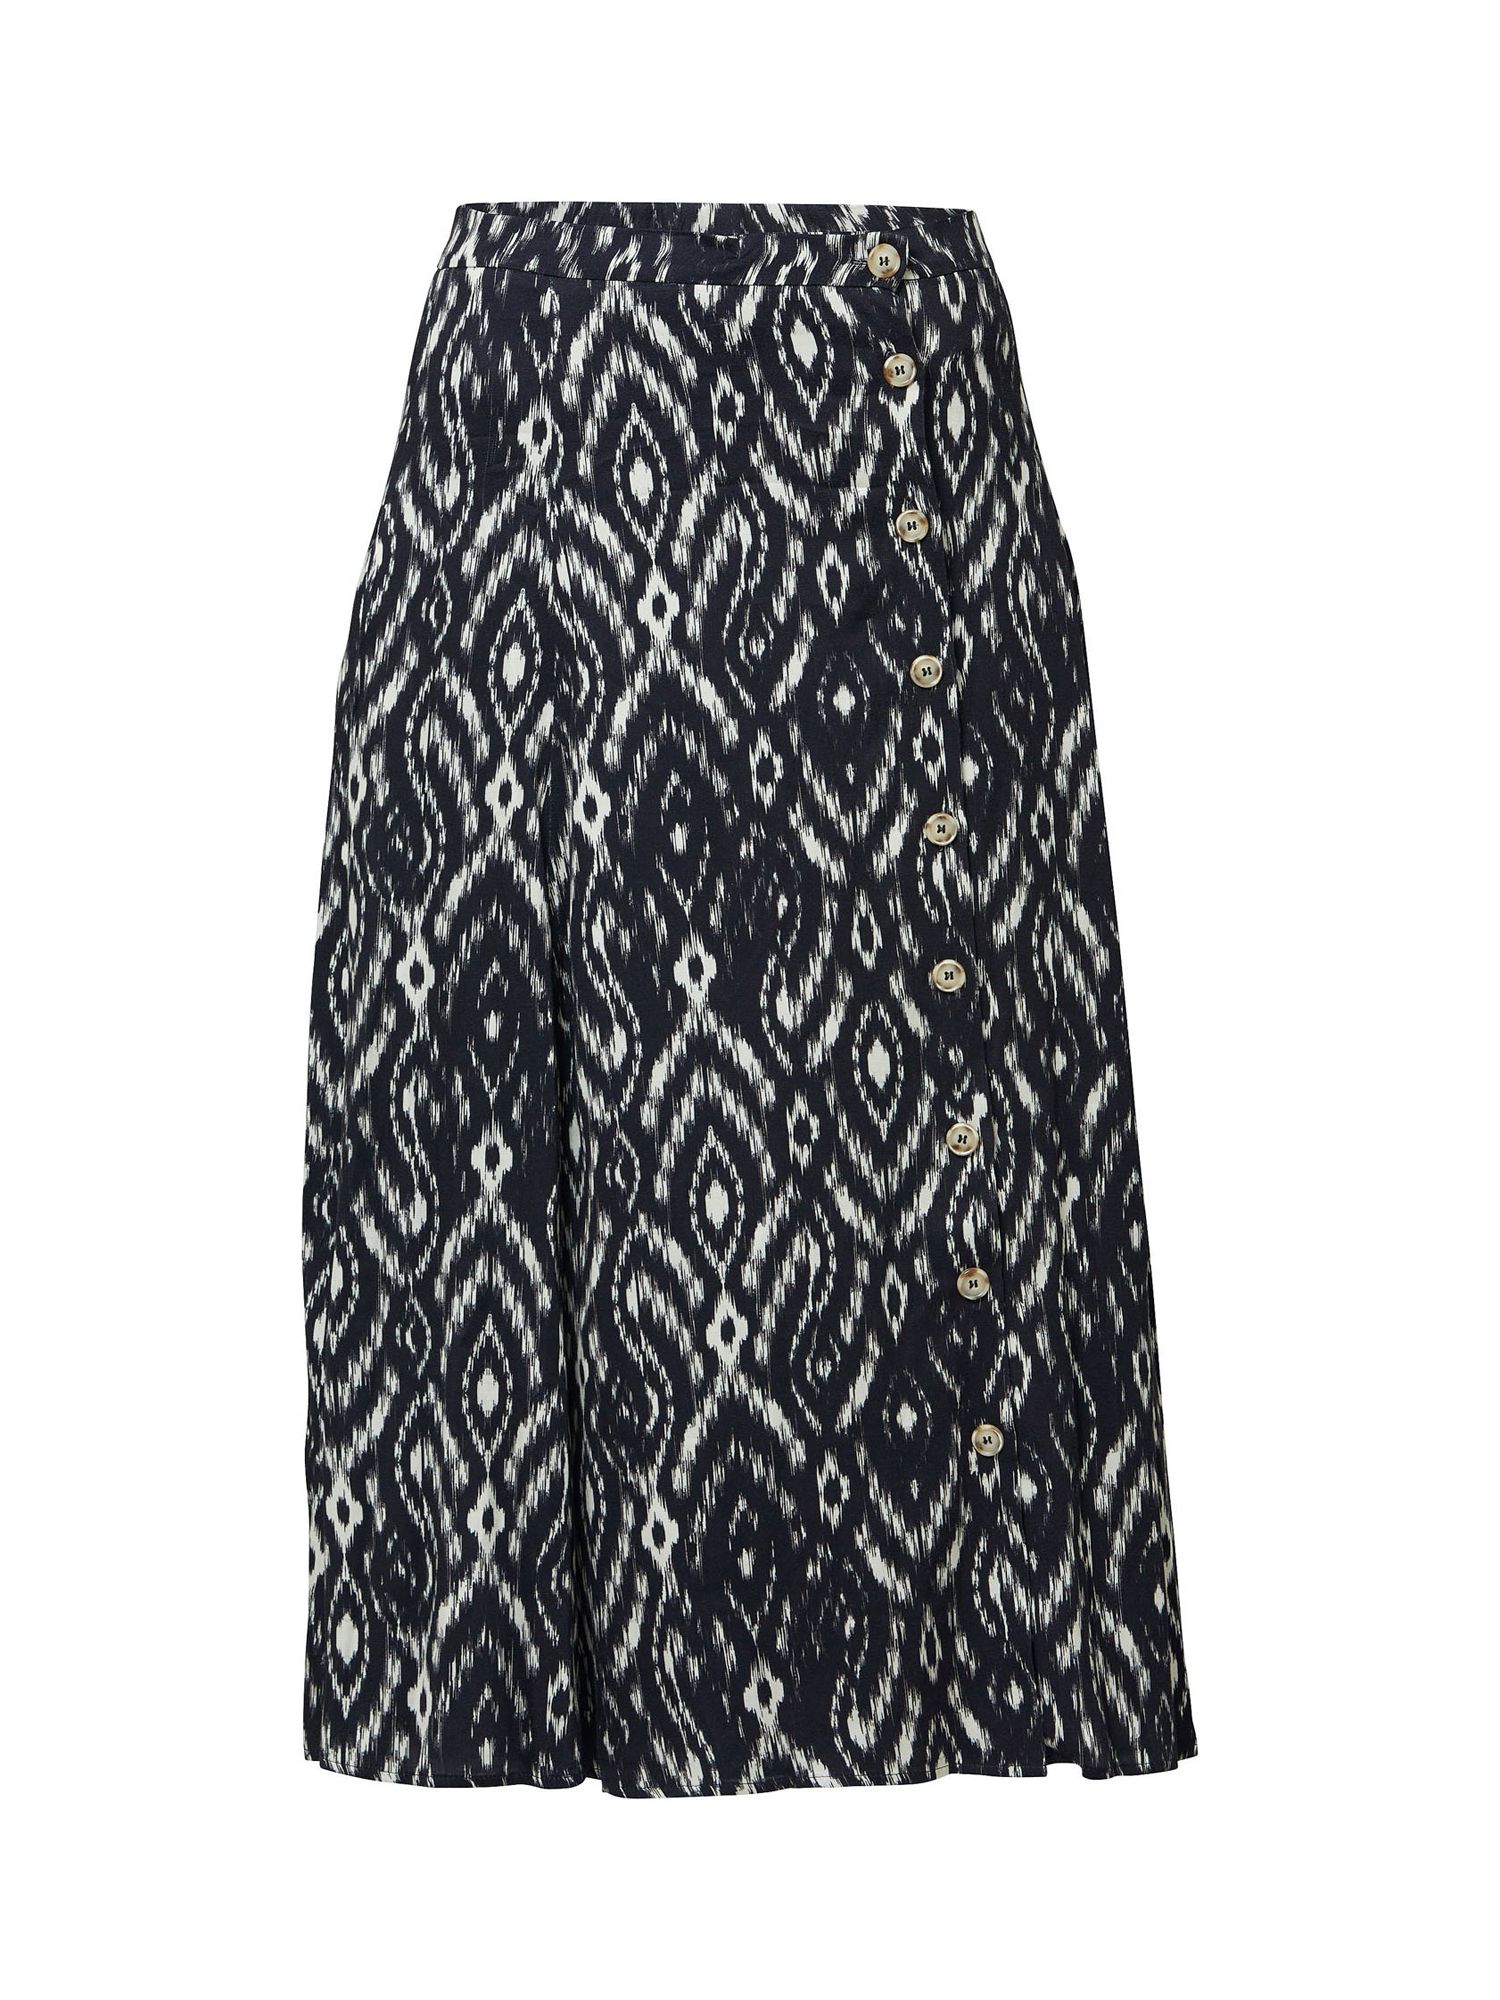 Buy Helen McAlinden Saddie Ikat Print Skirt, Black/White Online at johnlewis.com